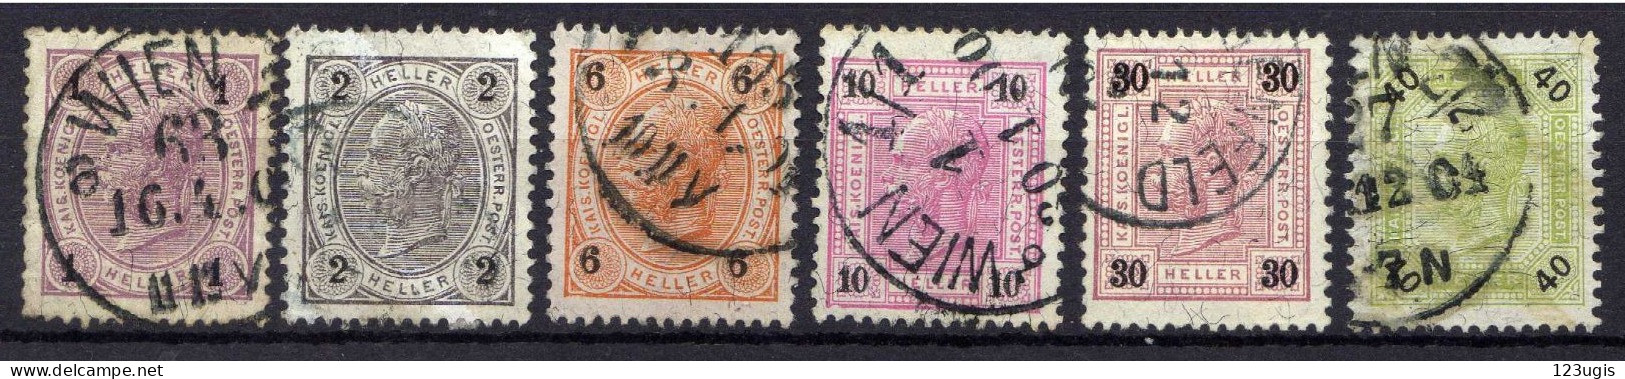 Österreich 1899 Mi 69-70; 73-74; 77-78 A, Zähnung 13 : 12 1/2, Gestempelt [200424XIV] - Gebraucht